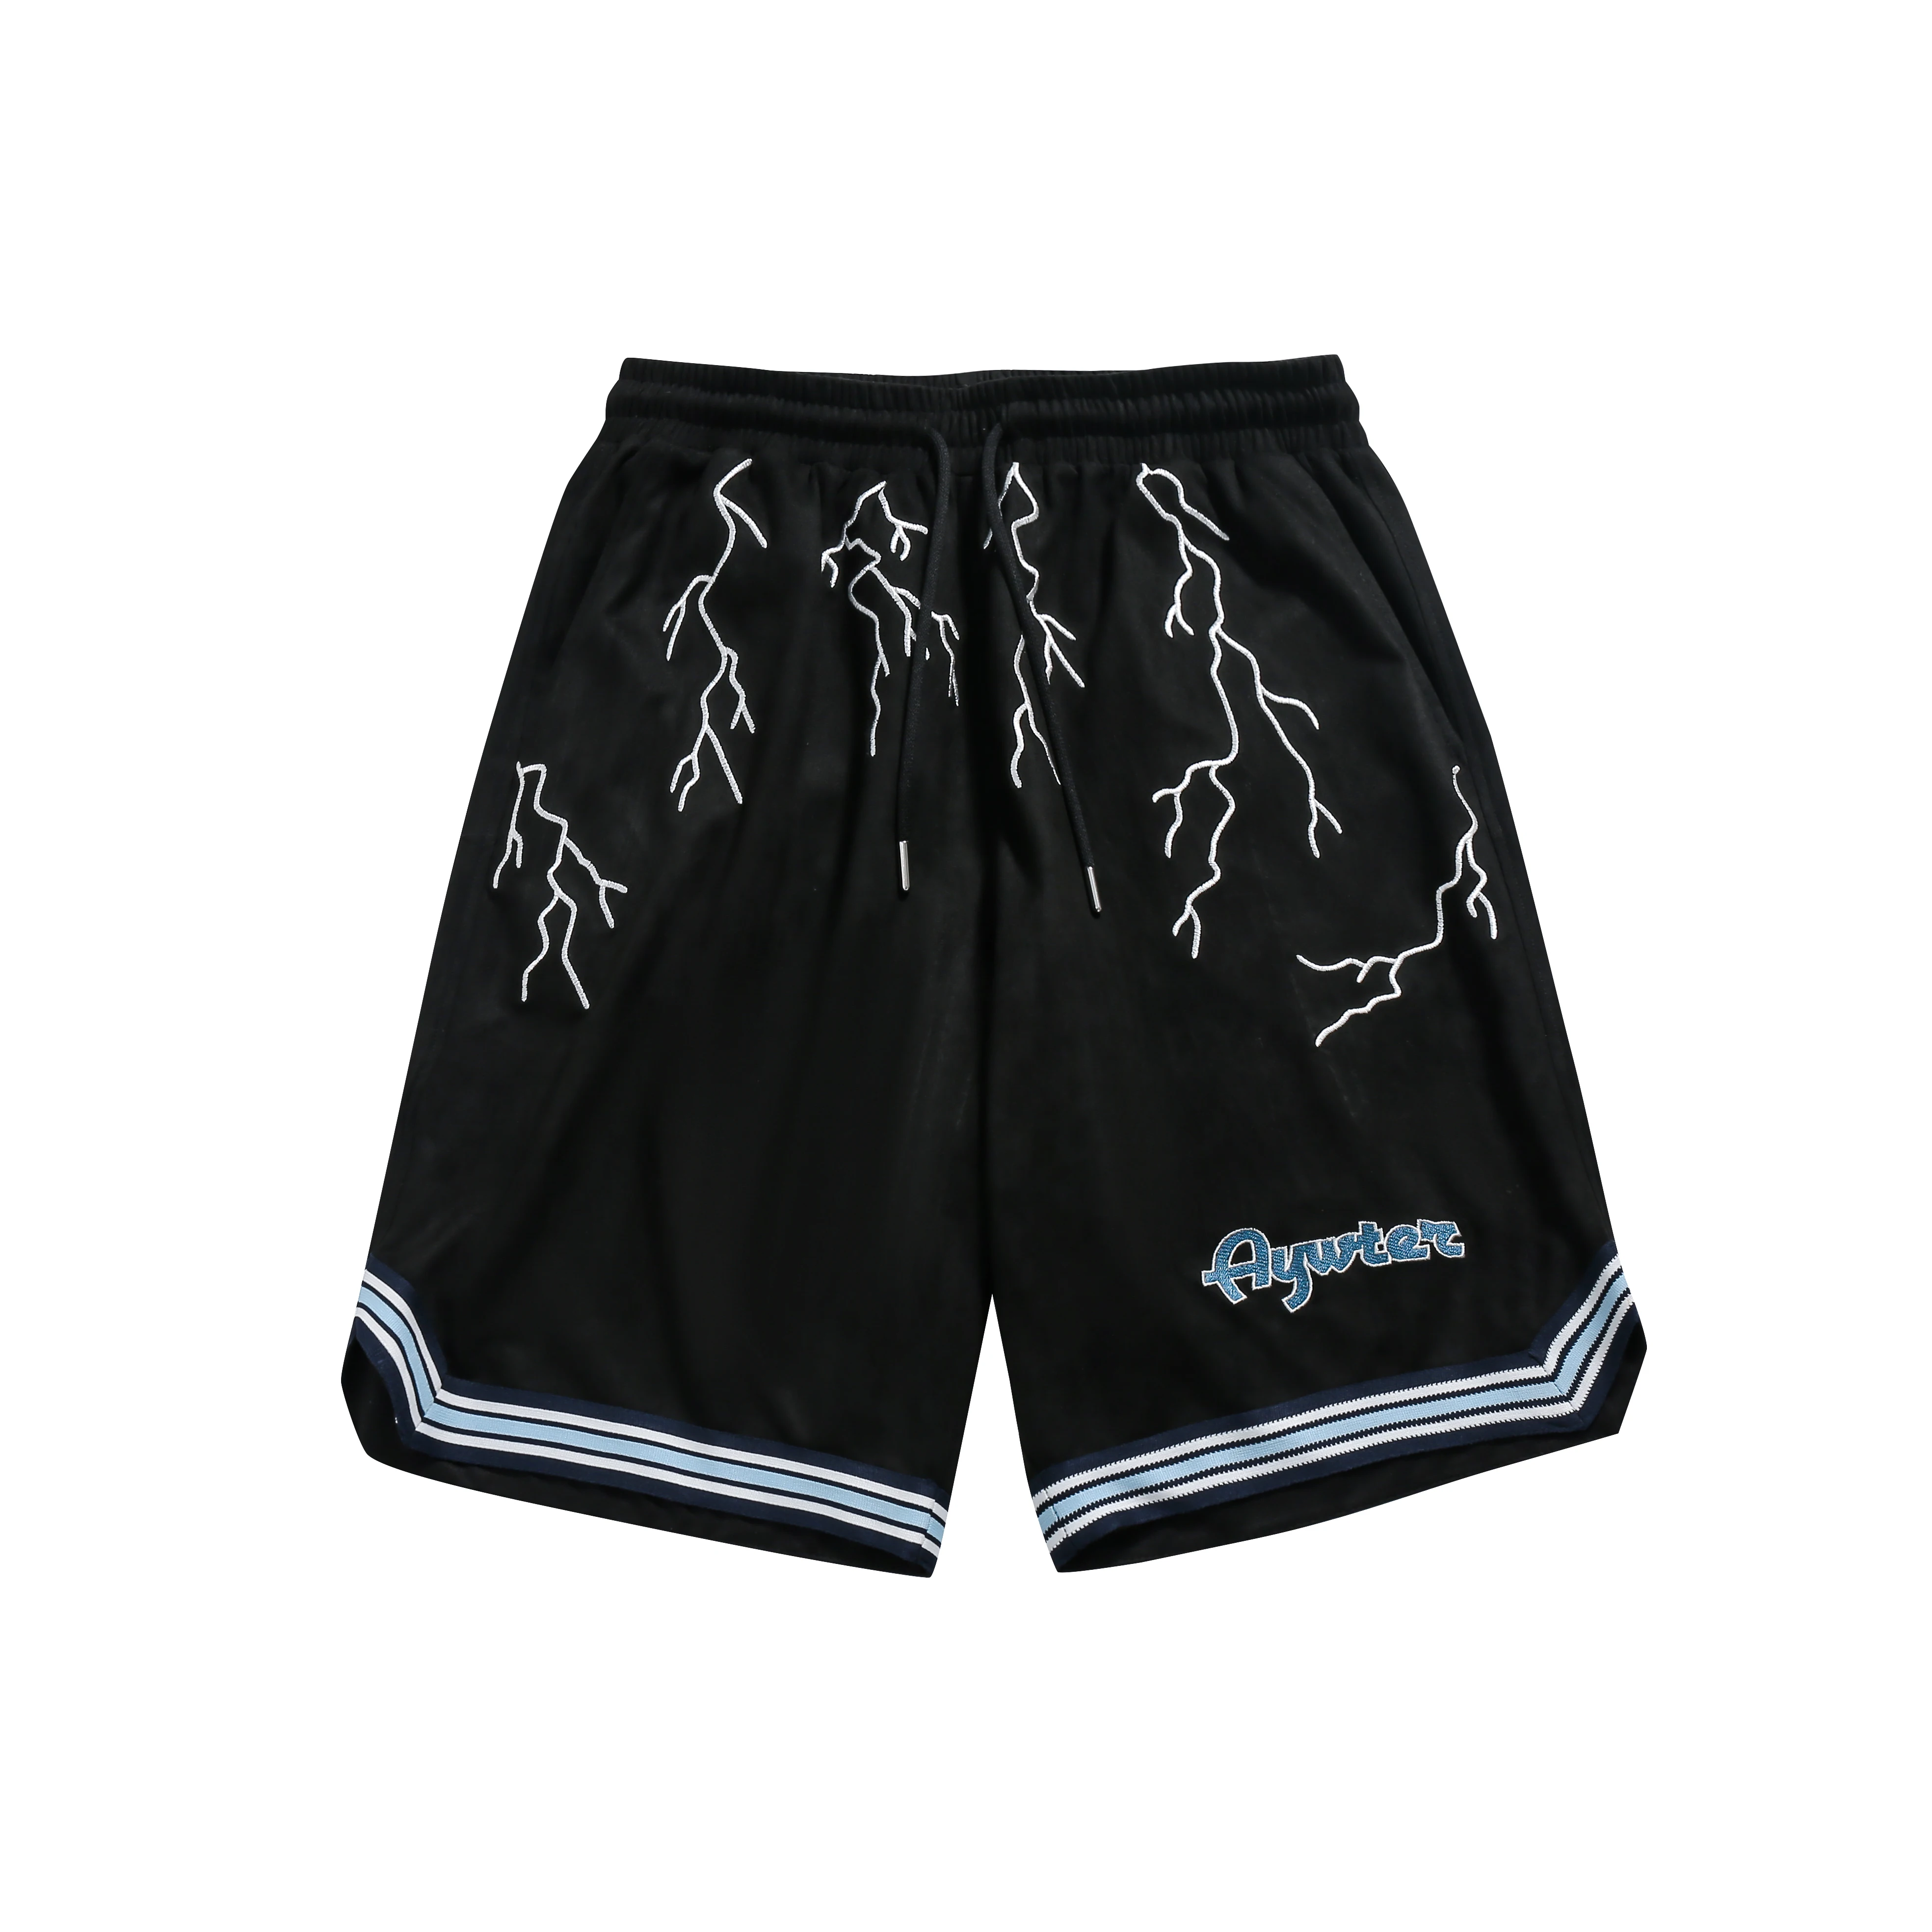 Custom Men's Basketball Shorts